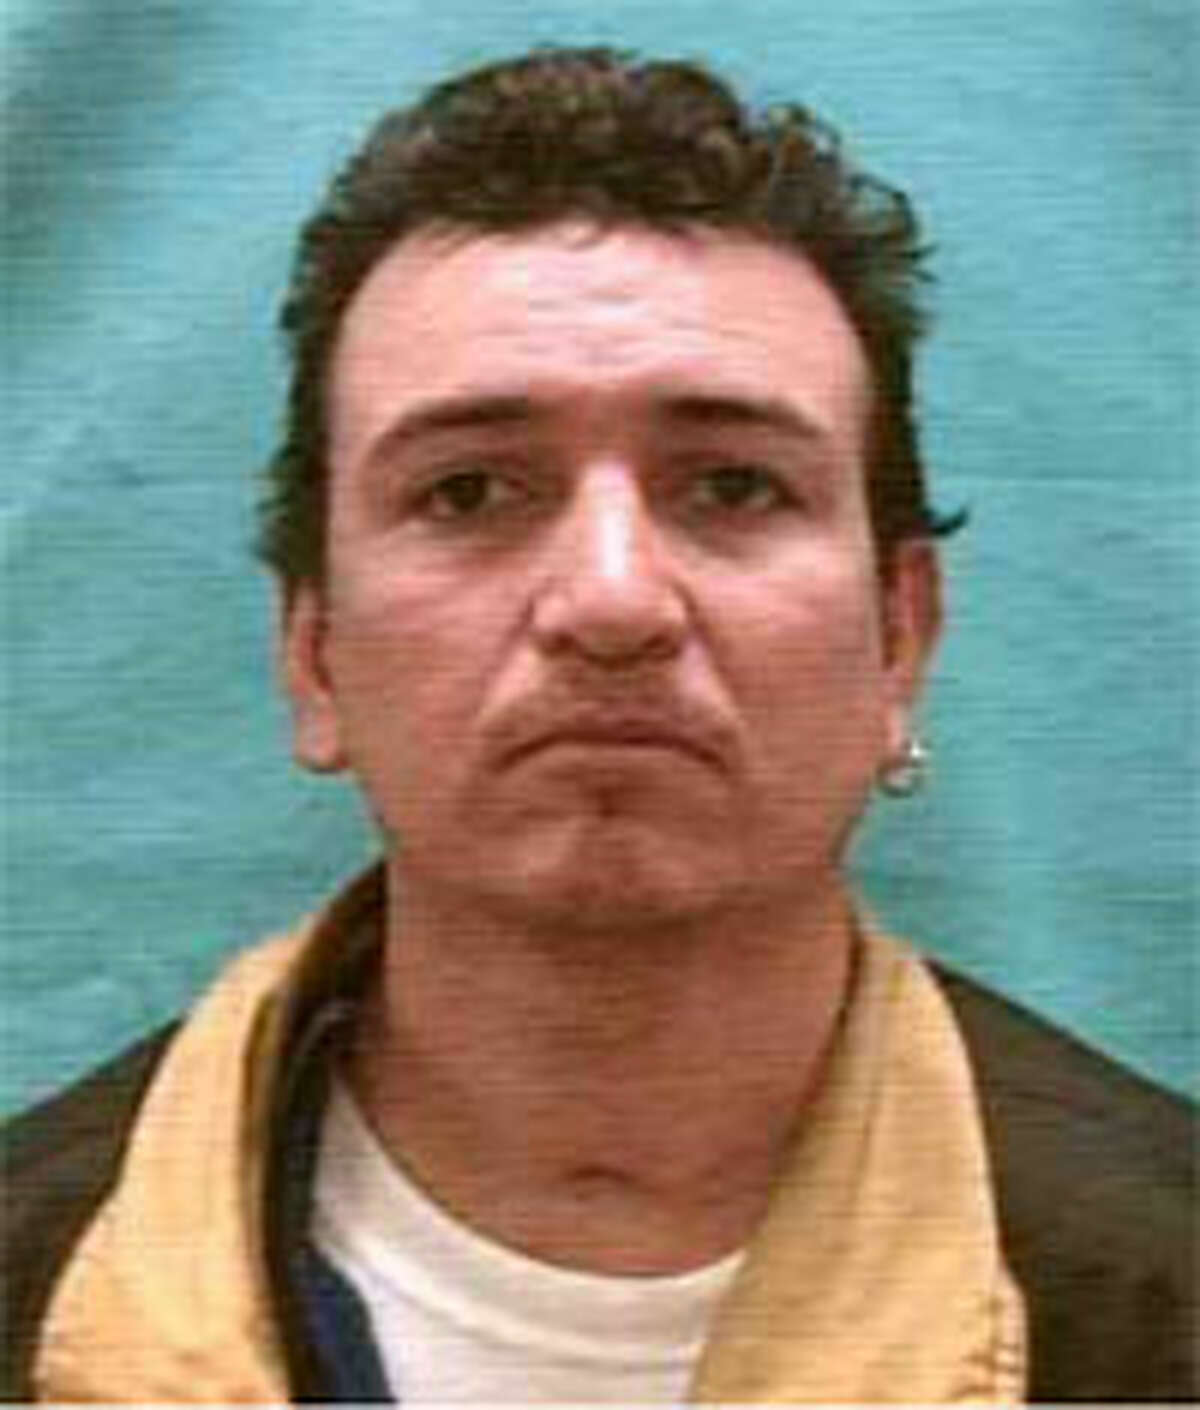 Armando Alvarez was found dead in his home at 431 Pace on Nov. 3.